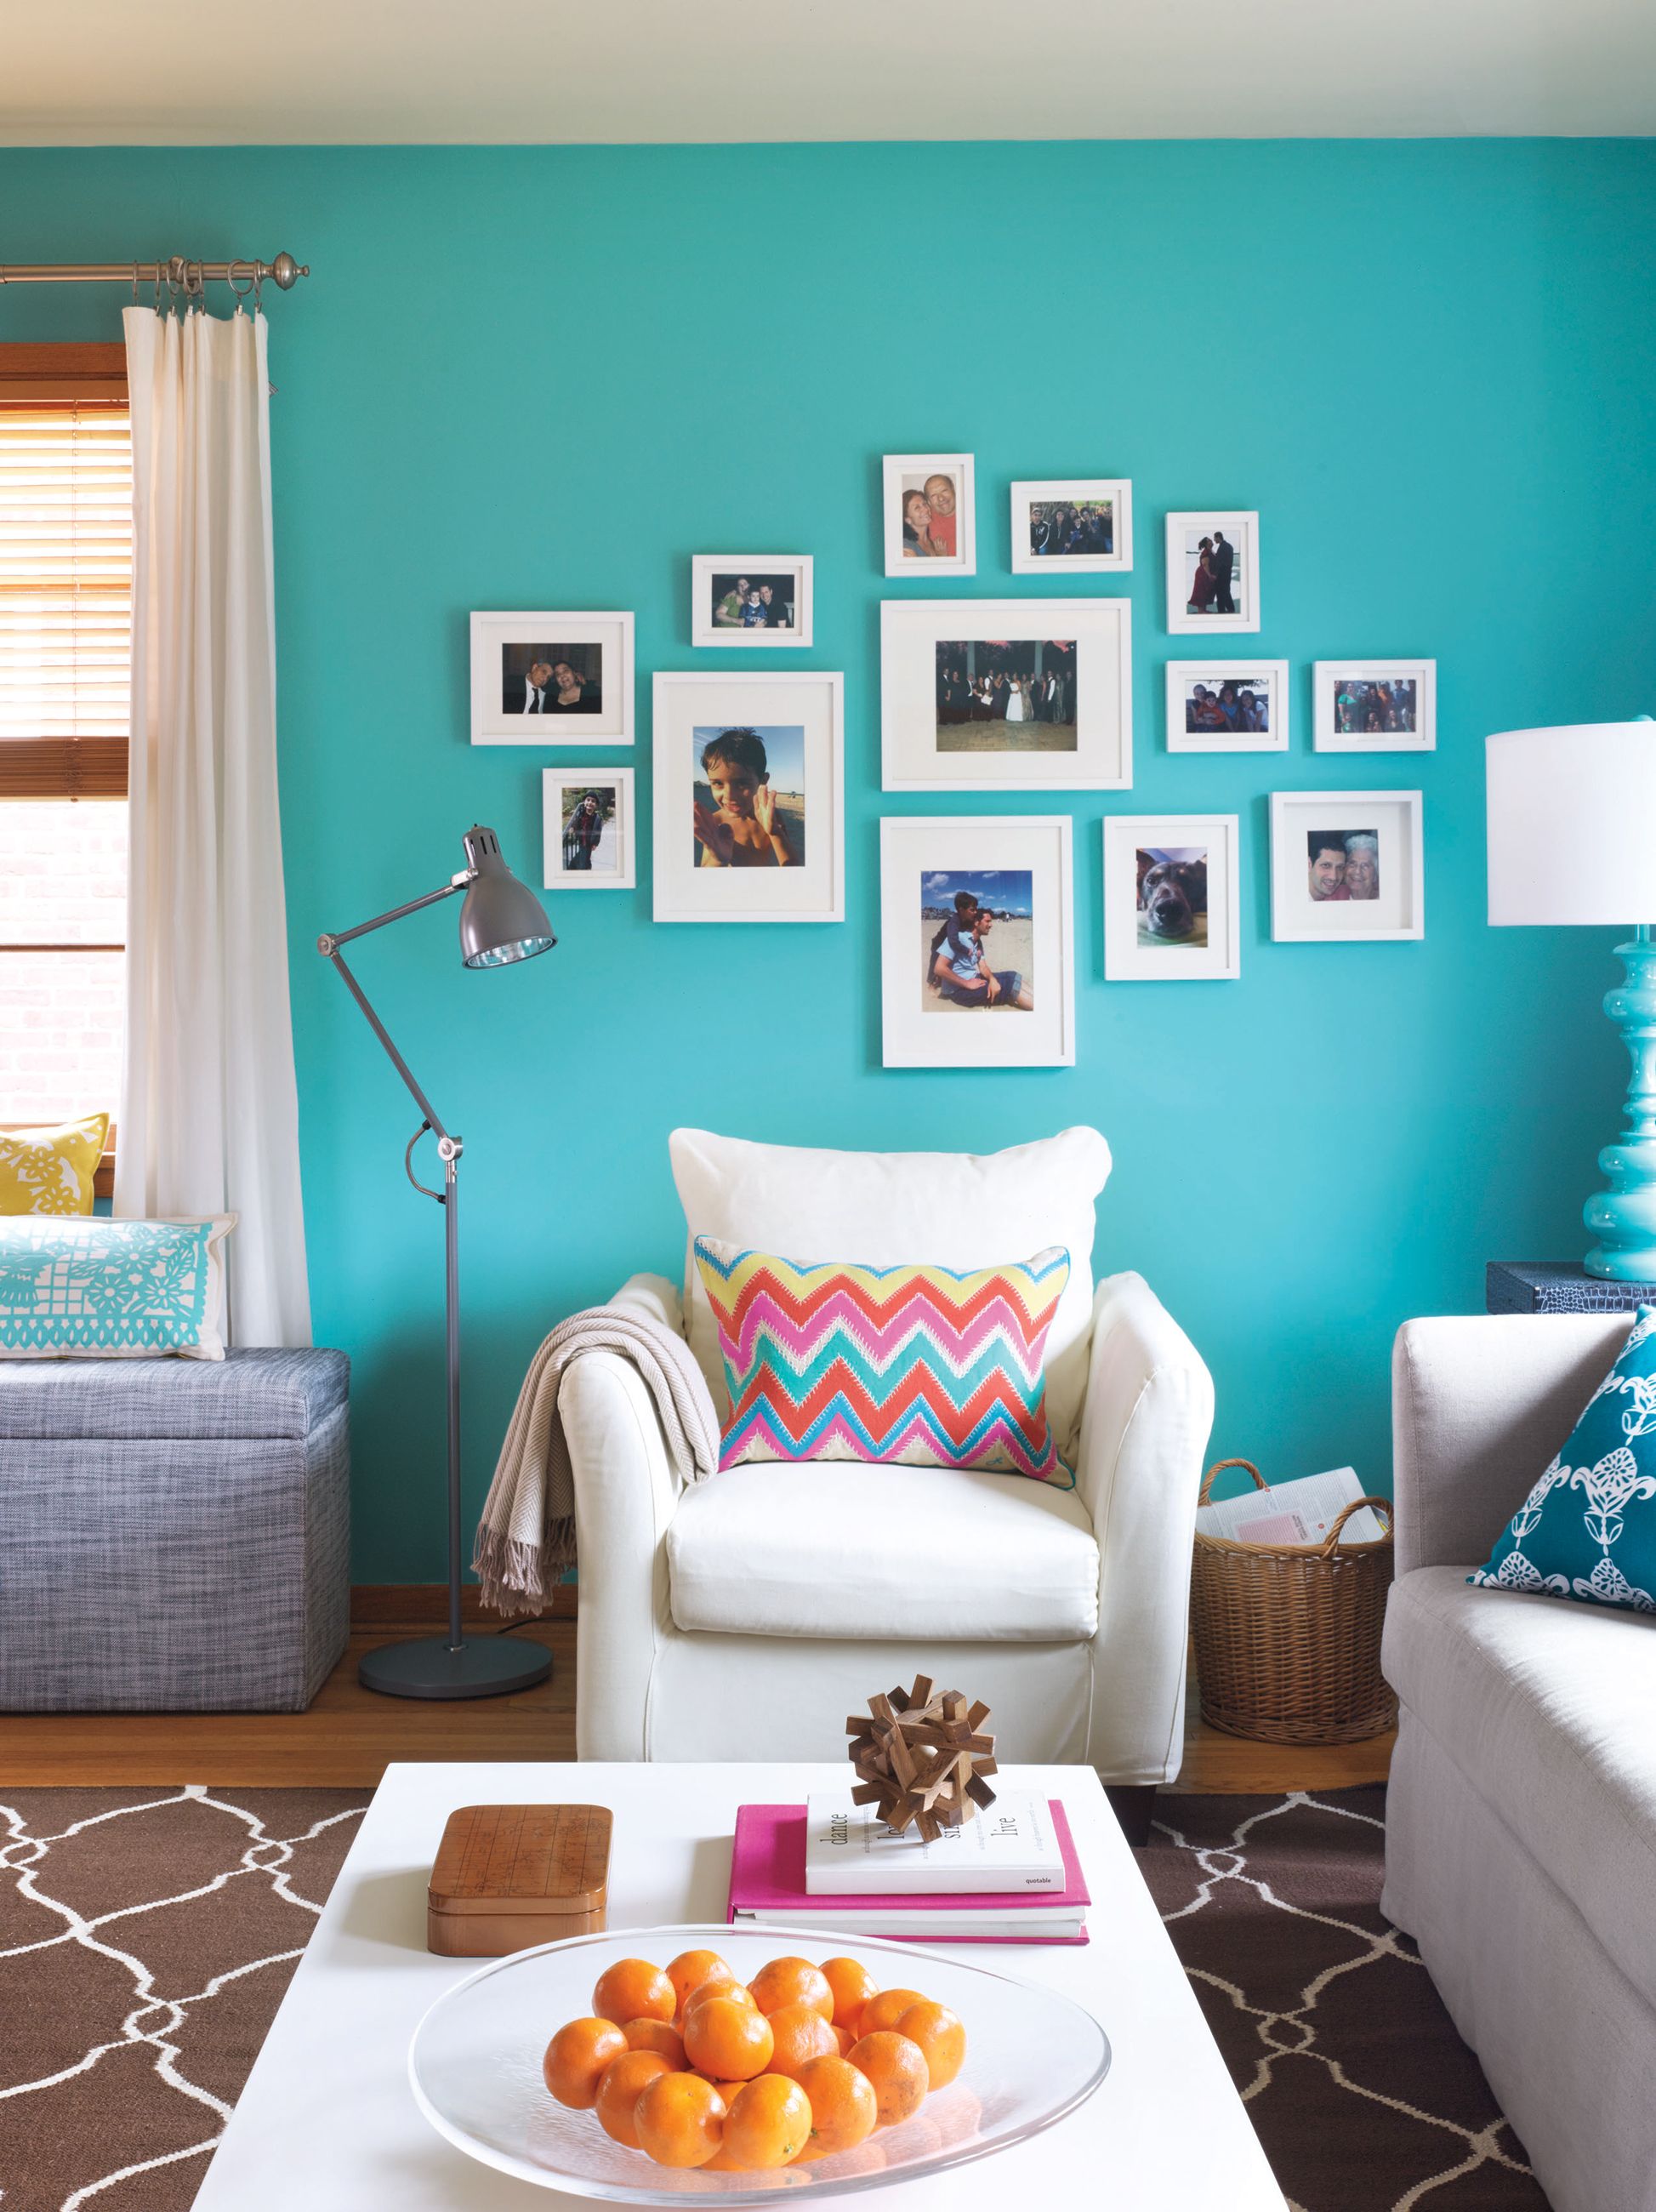 12 Best Living Room Paint Color Ideas - Top Living Room Paint Colors